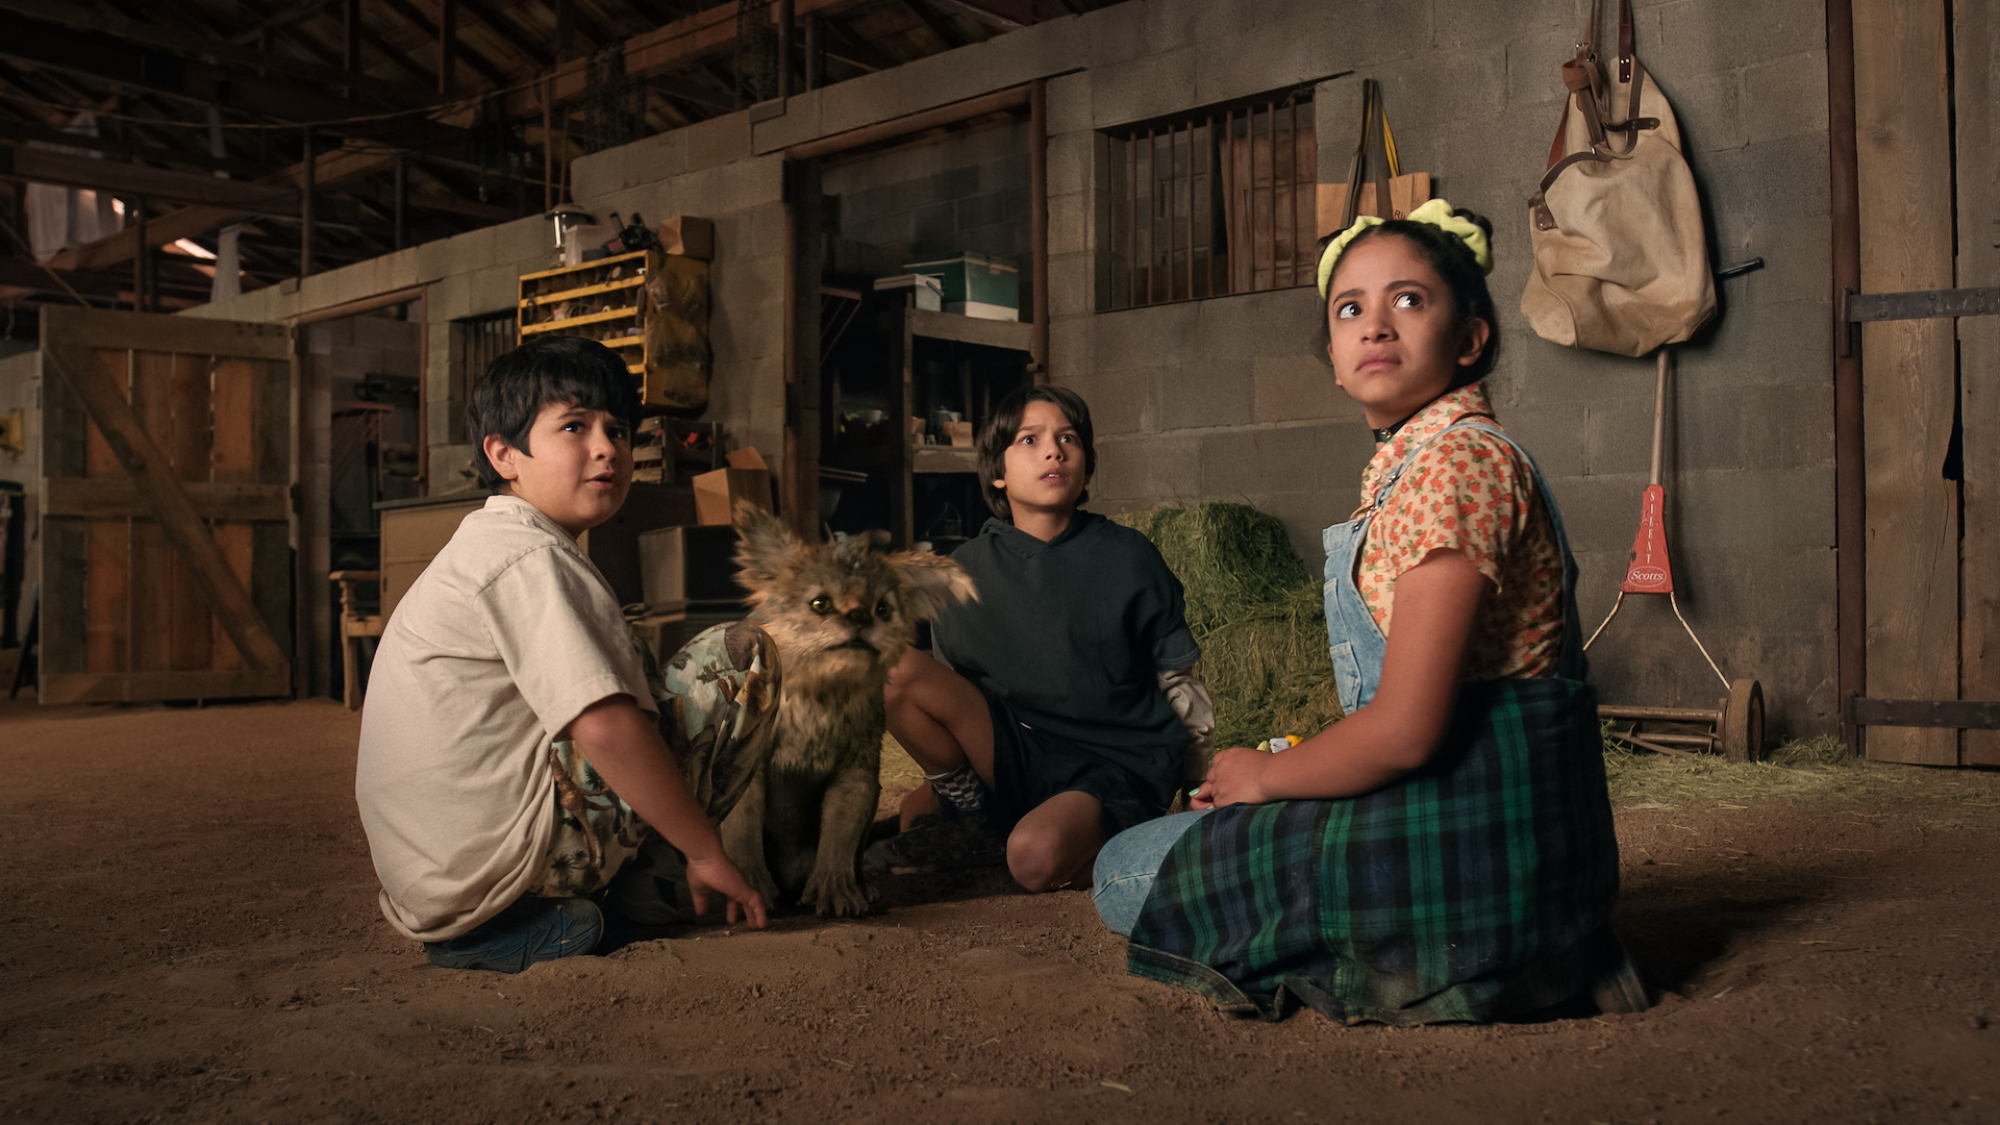 Trois enfants sont assis autour d'une petite bête mythique dans une grange.